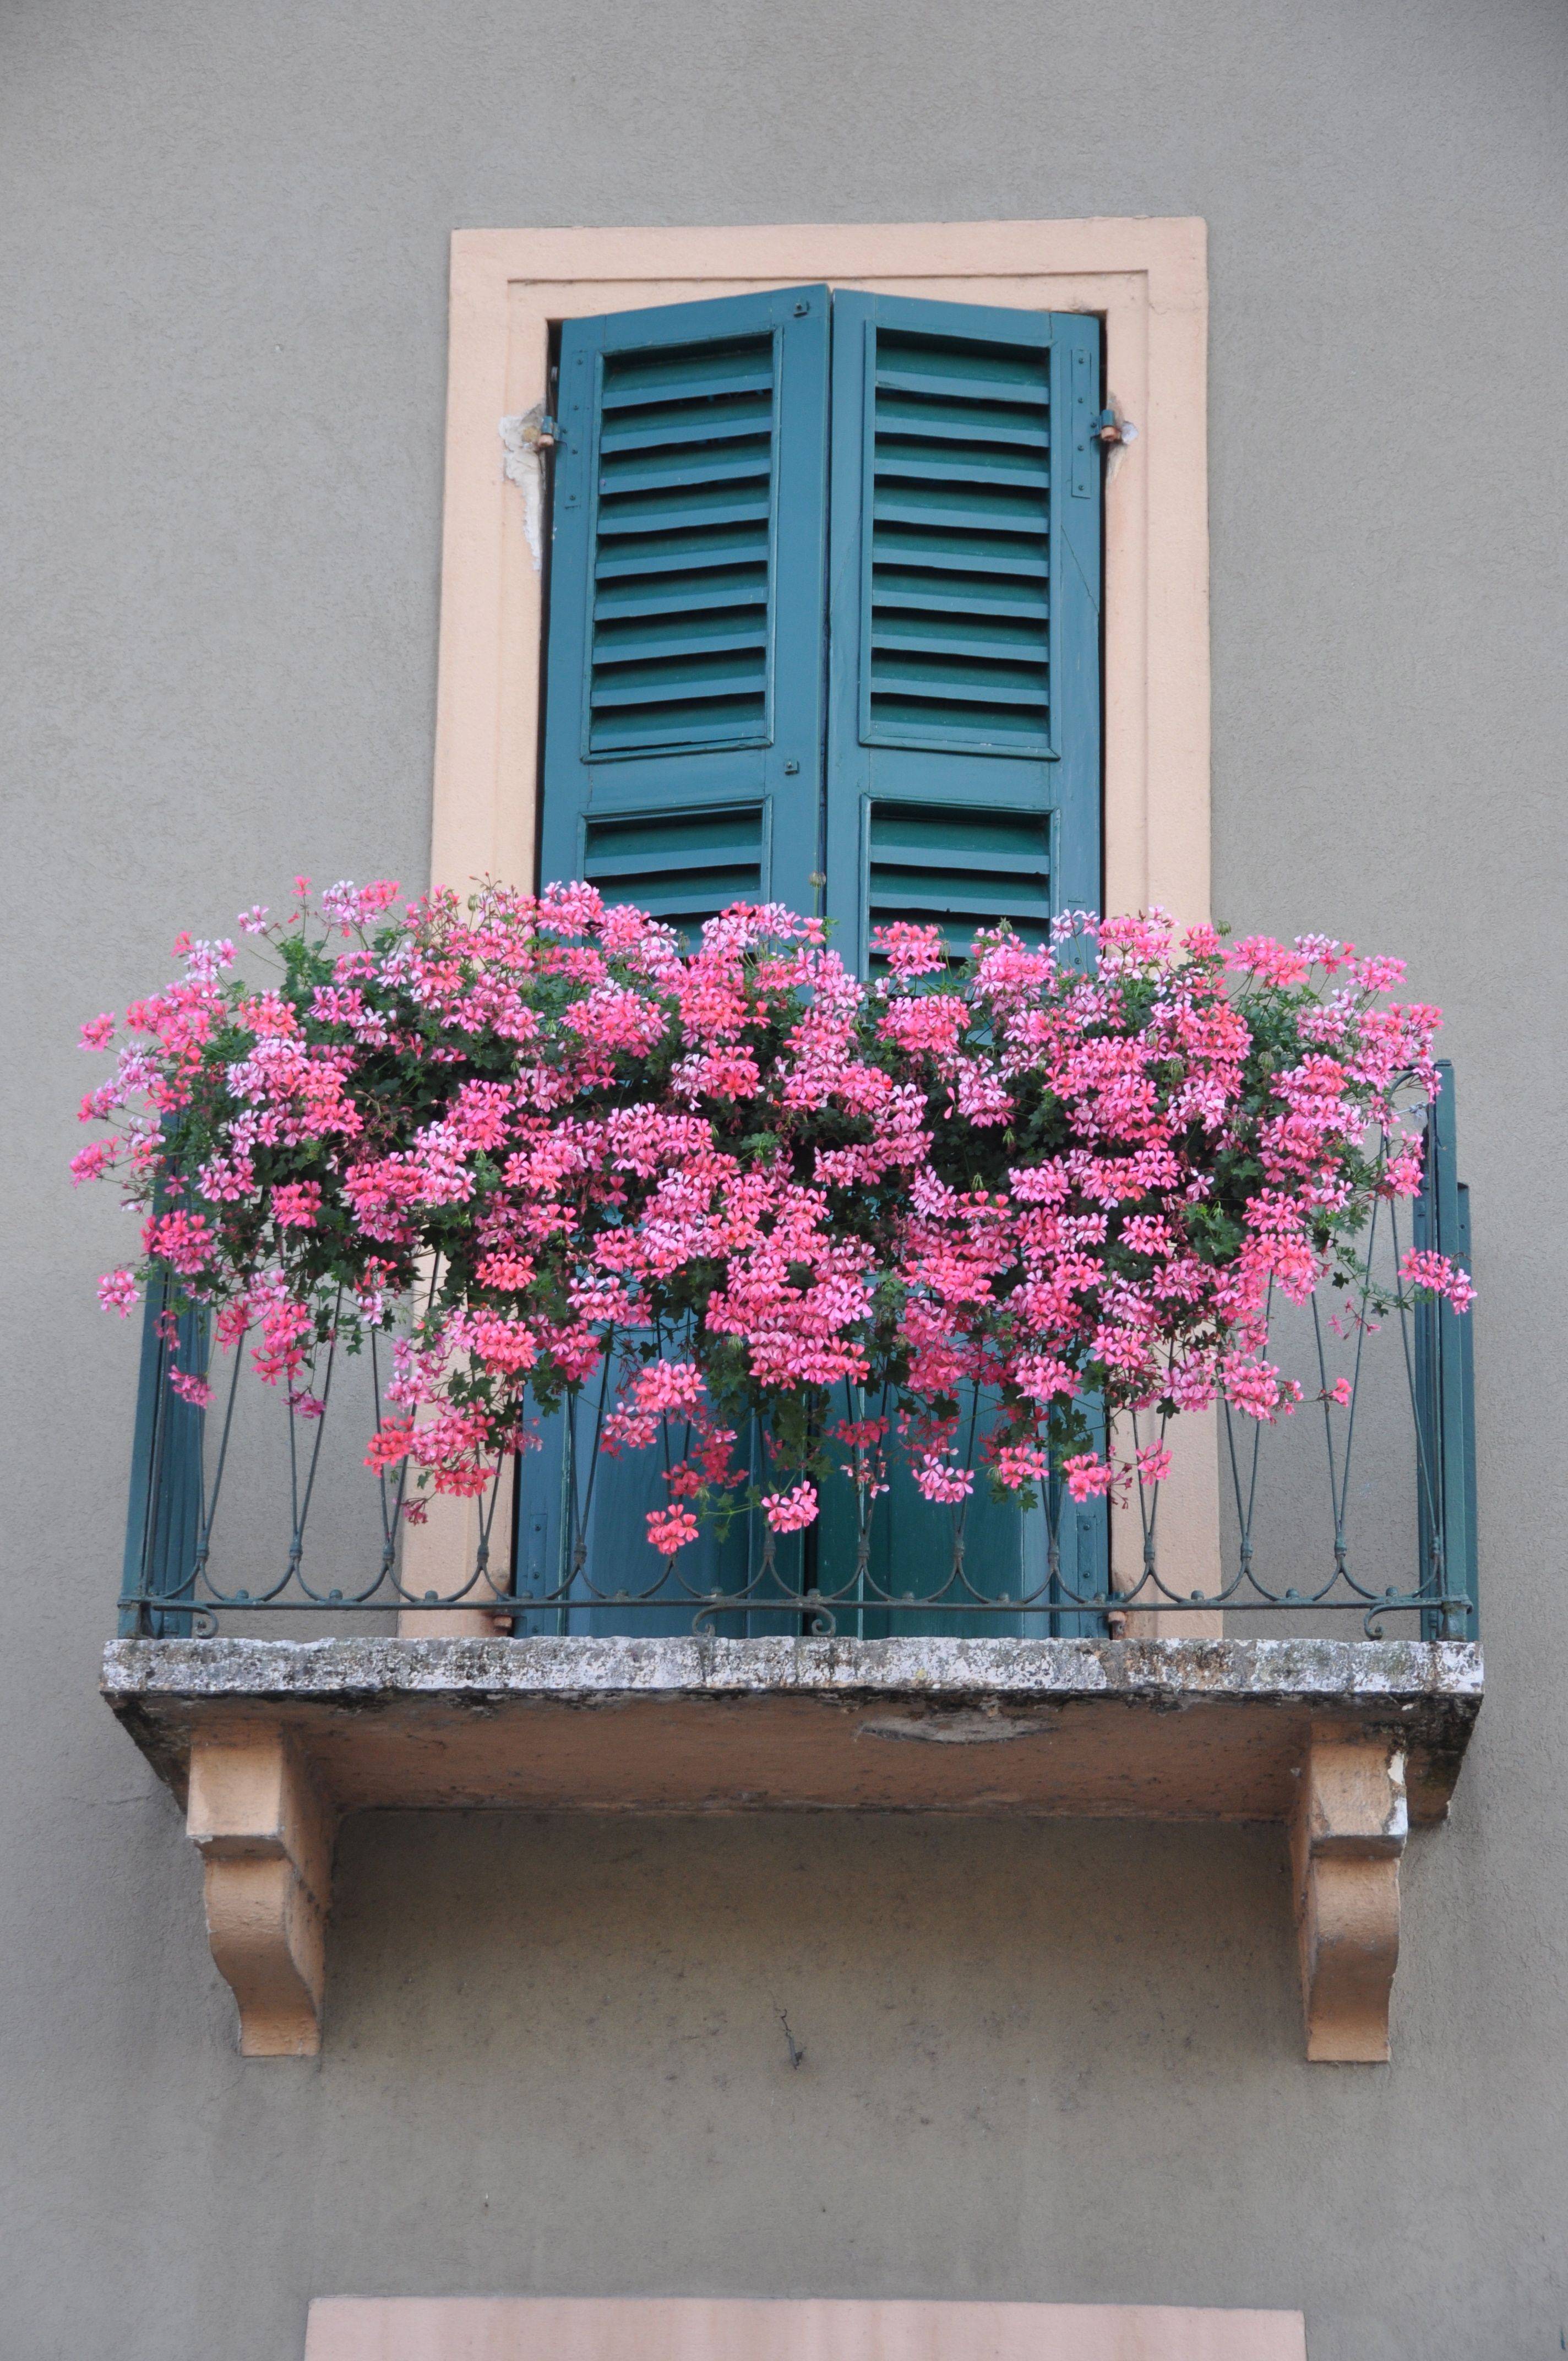 Windows And Doors Of Italy Windows And Doors Garden Windows